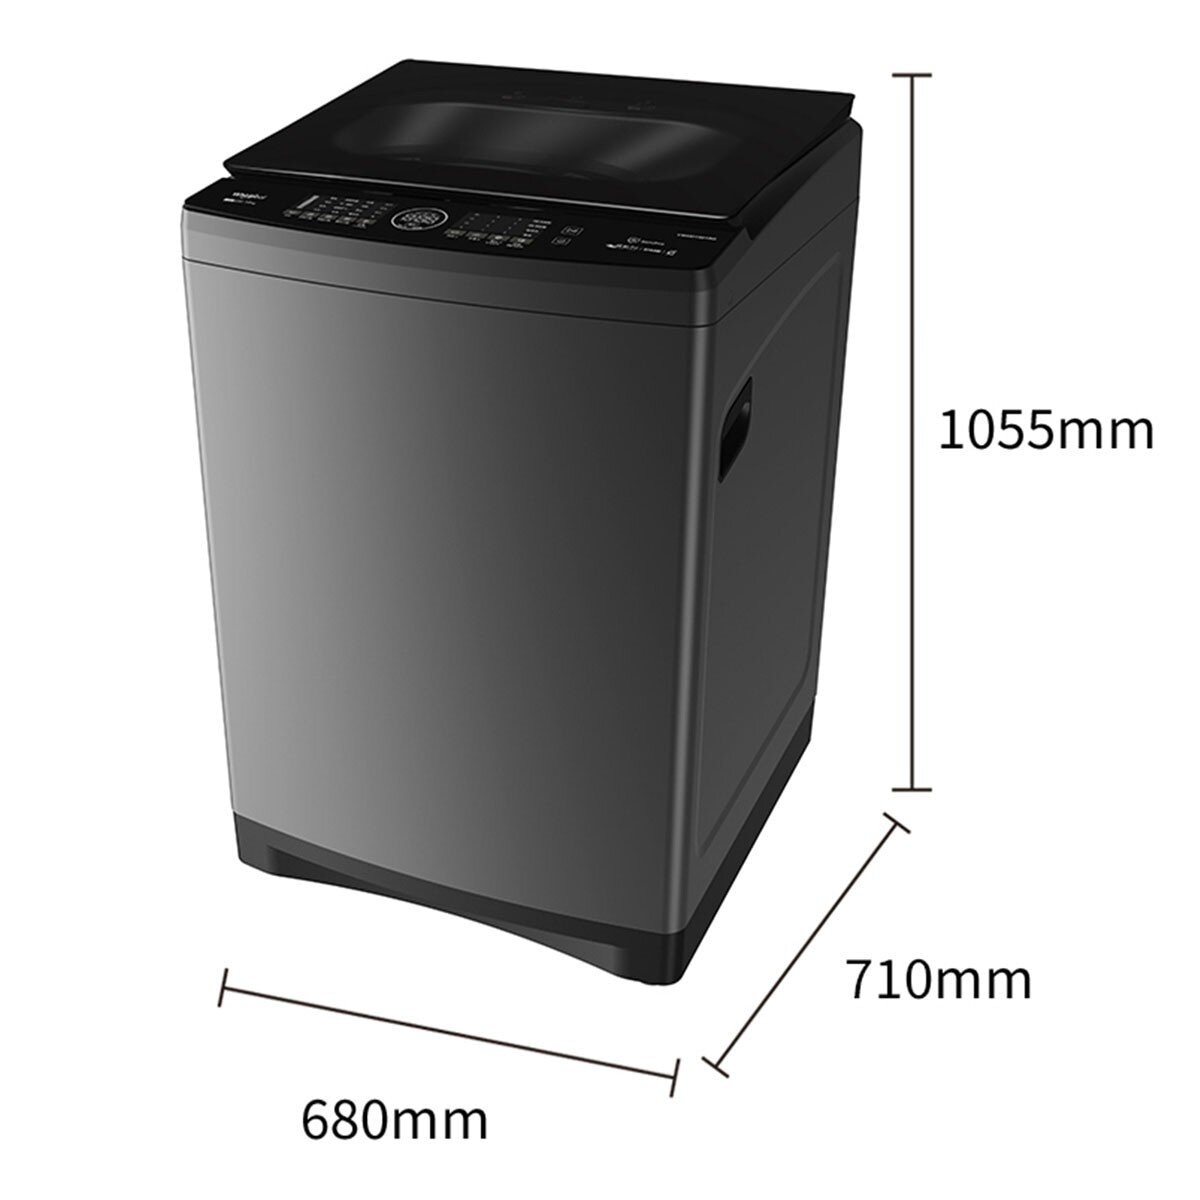 惠而浦 19公斤 變頻蒸氣溫水洗衣機 VWHD1901BG